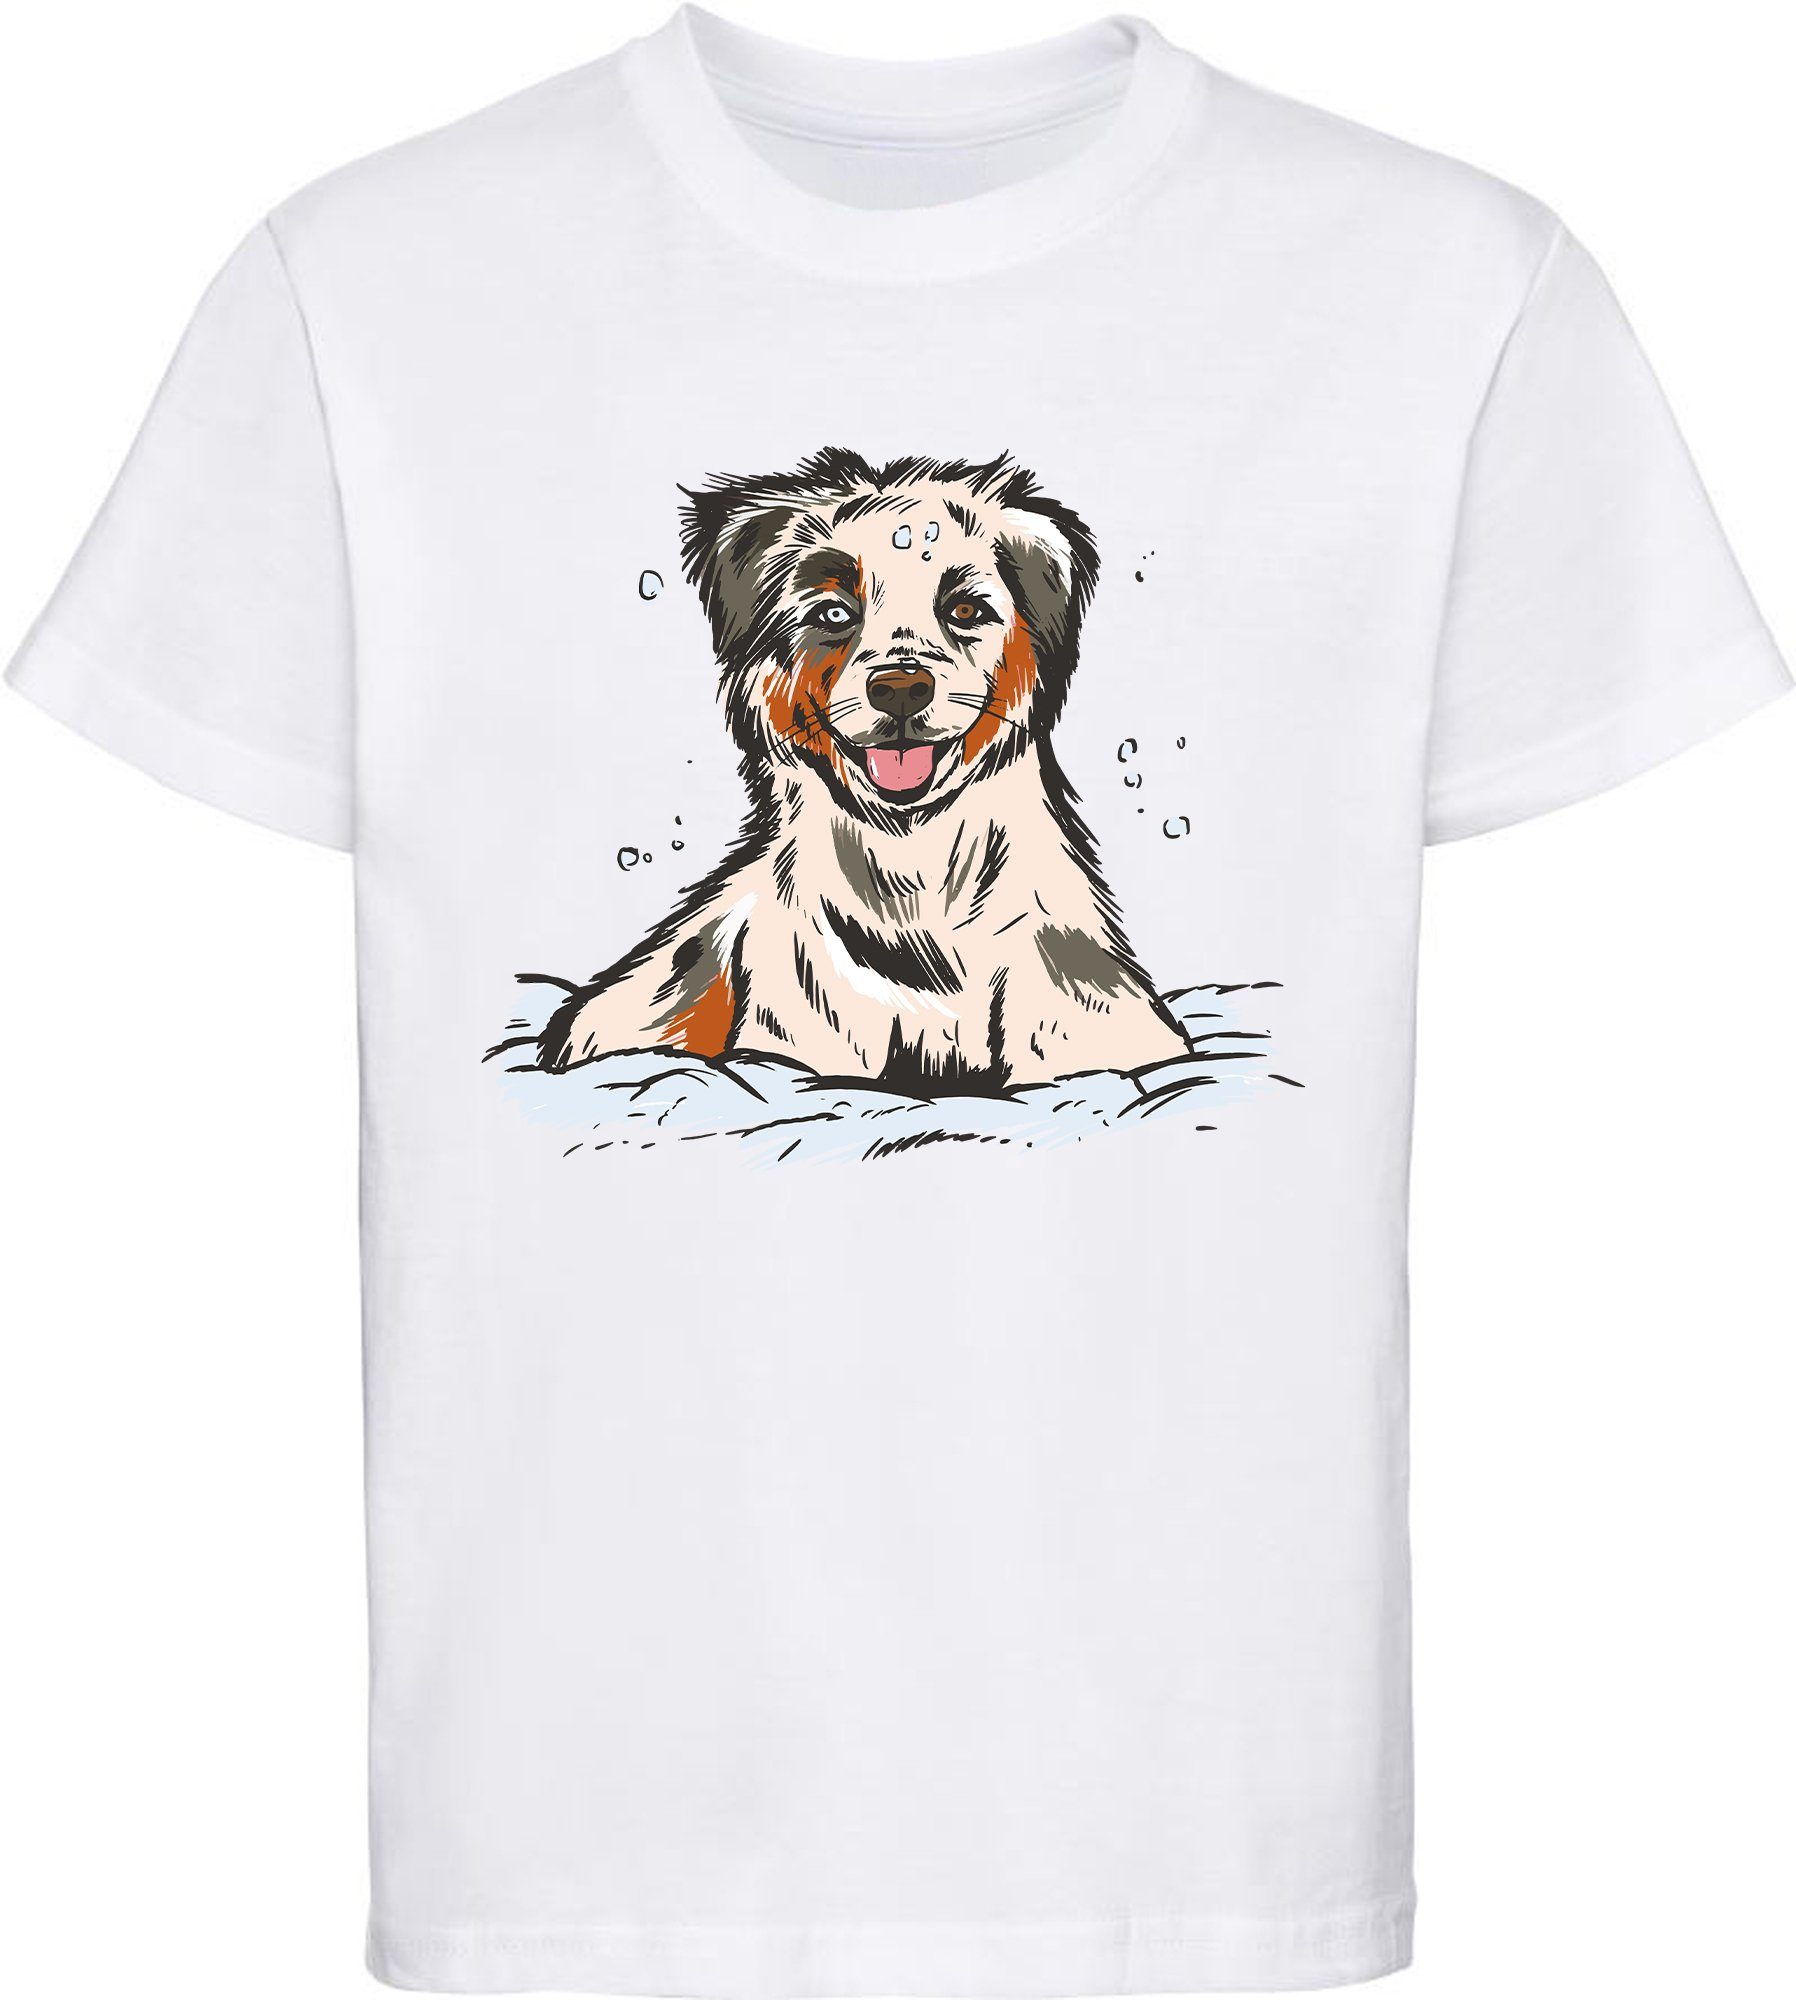 MyDesign24 Print-Shirt bedrucktes Kinder und Jugend Hunde T-Shirt Australian Shepherd Welpe Baumwollshirt mit Aufdruck, i216 weiss | T-Shirts